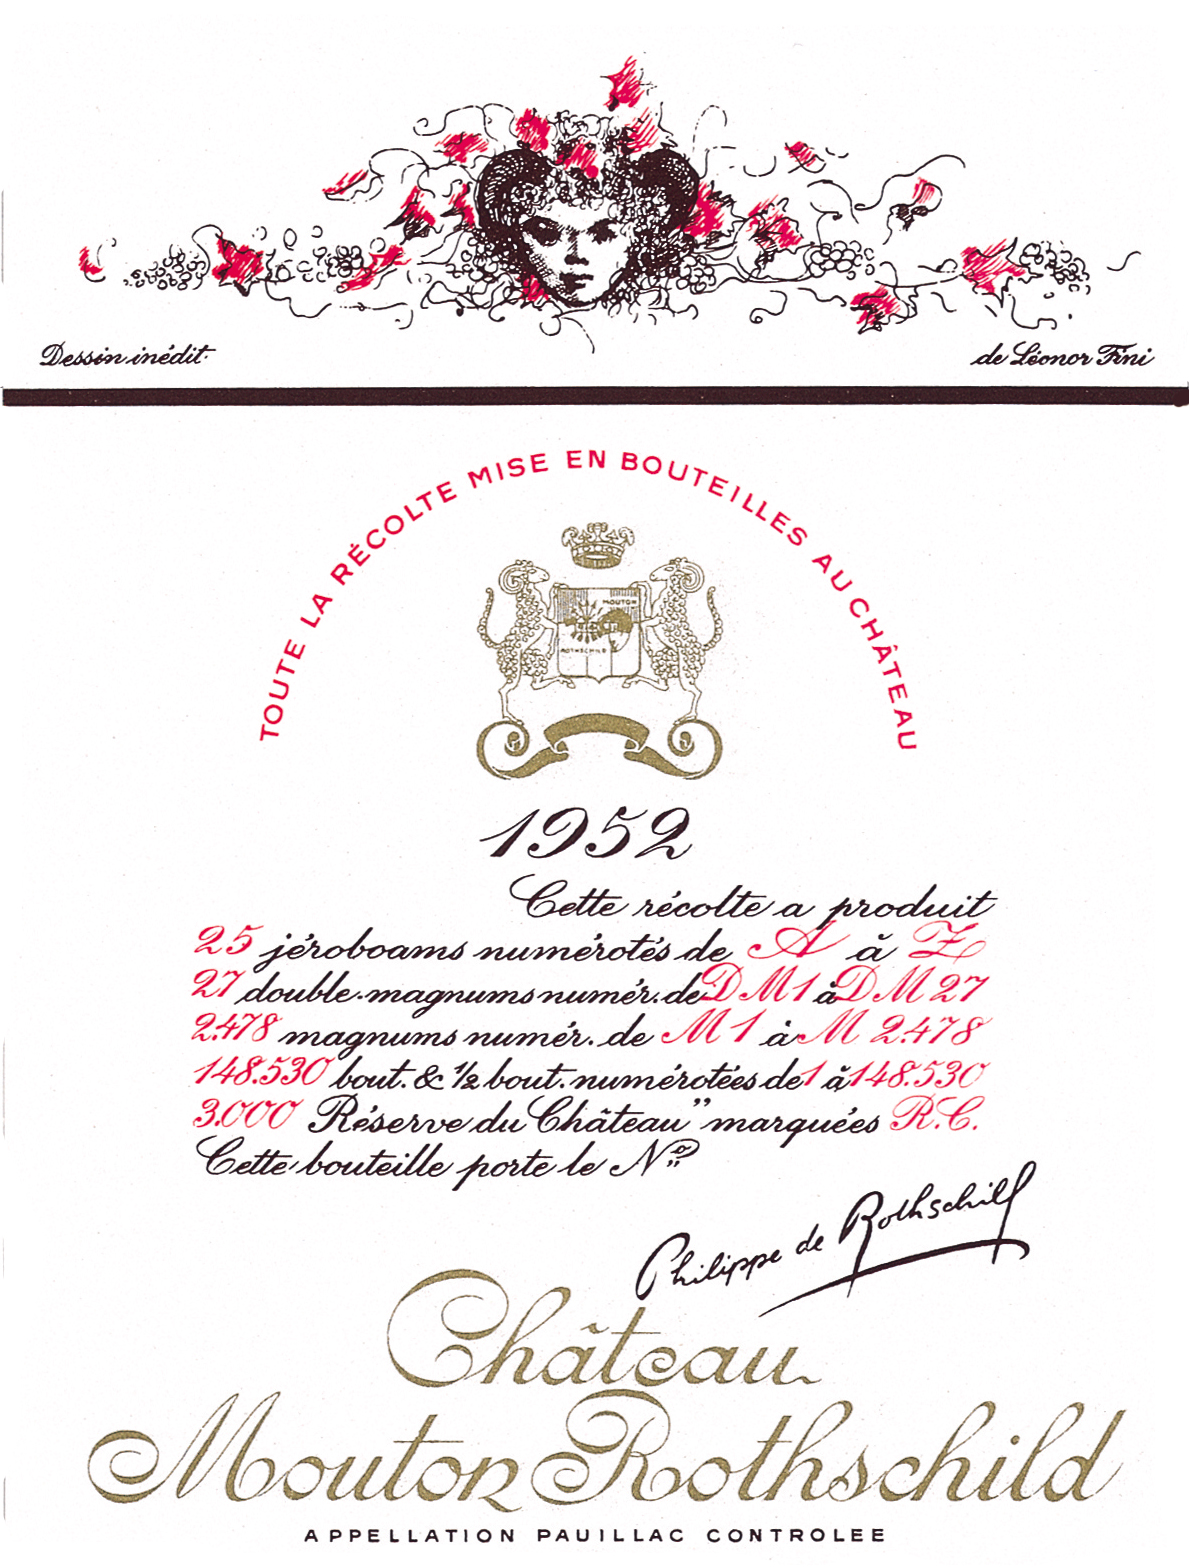 Etiquette Mouton Rothschild 1952